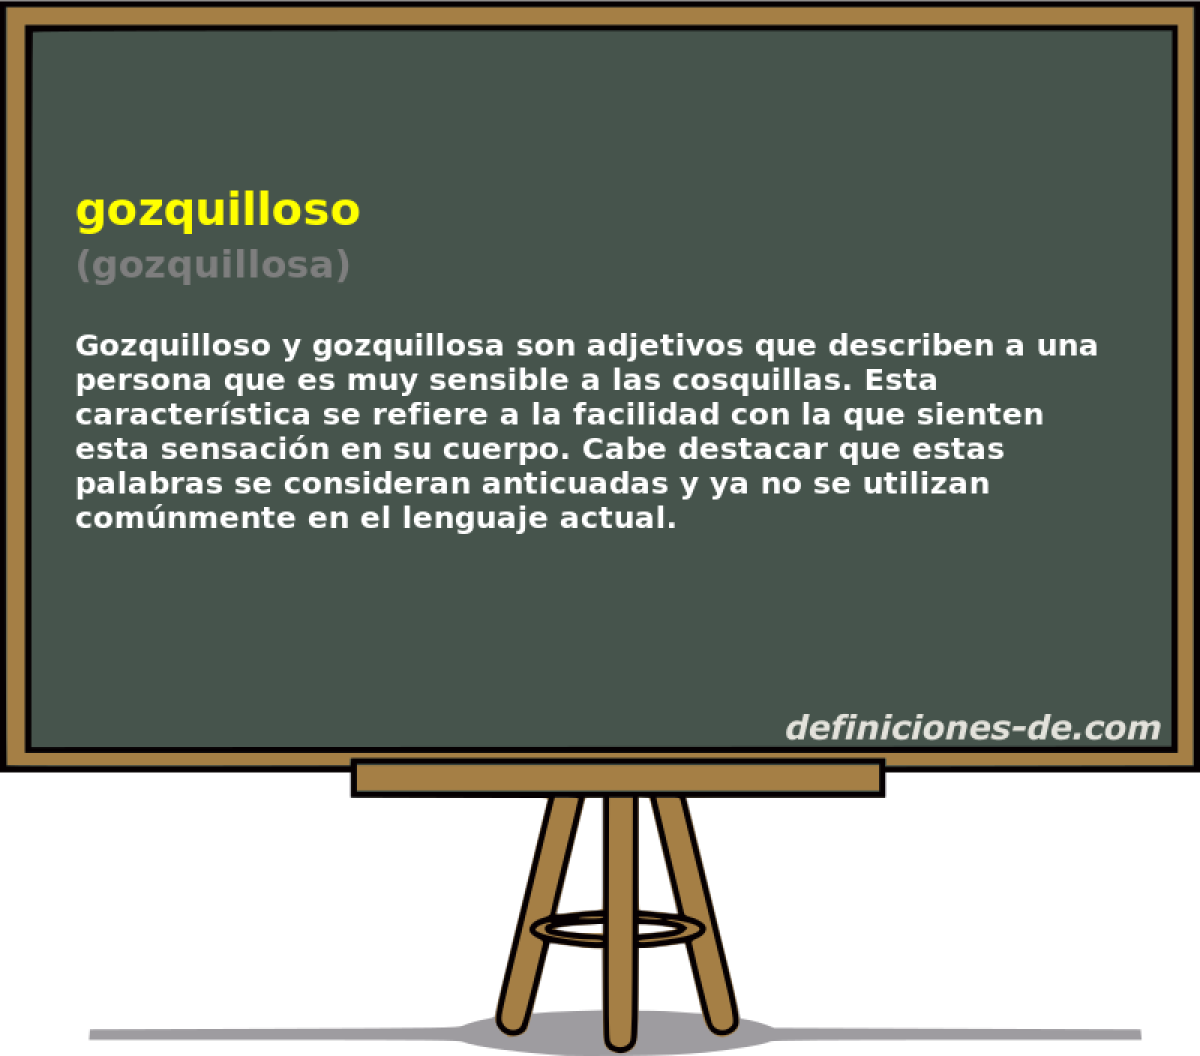 gozquilloso (gozquillosa)